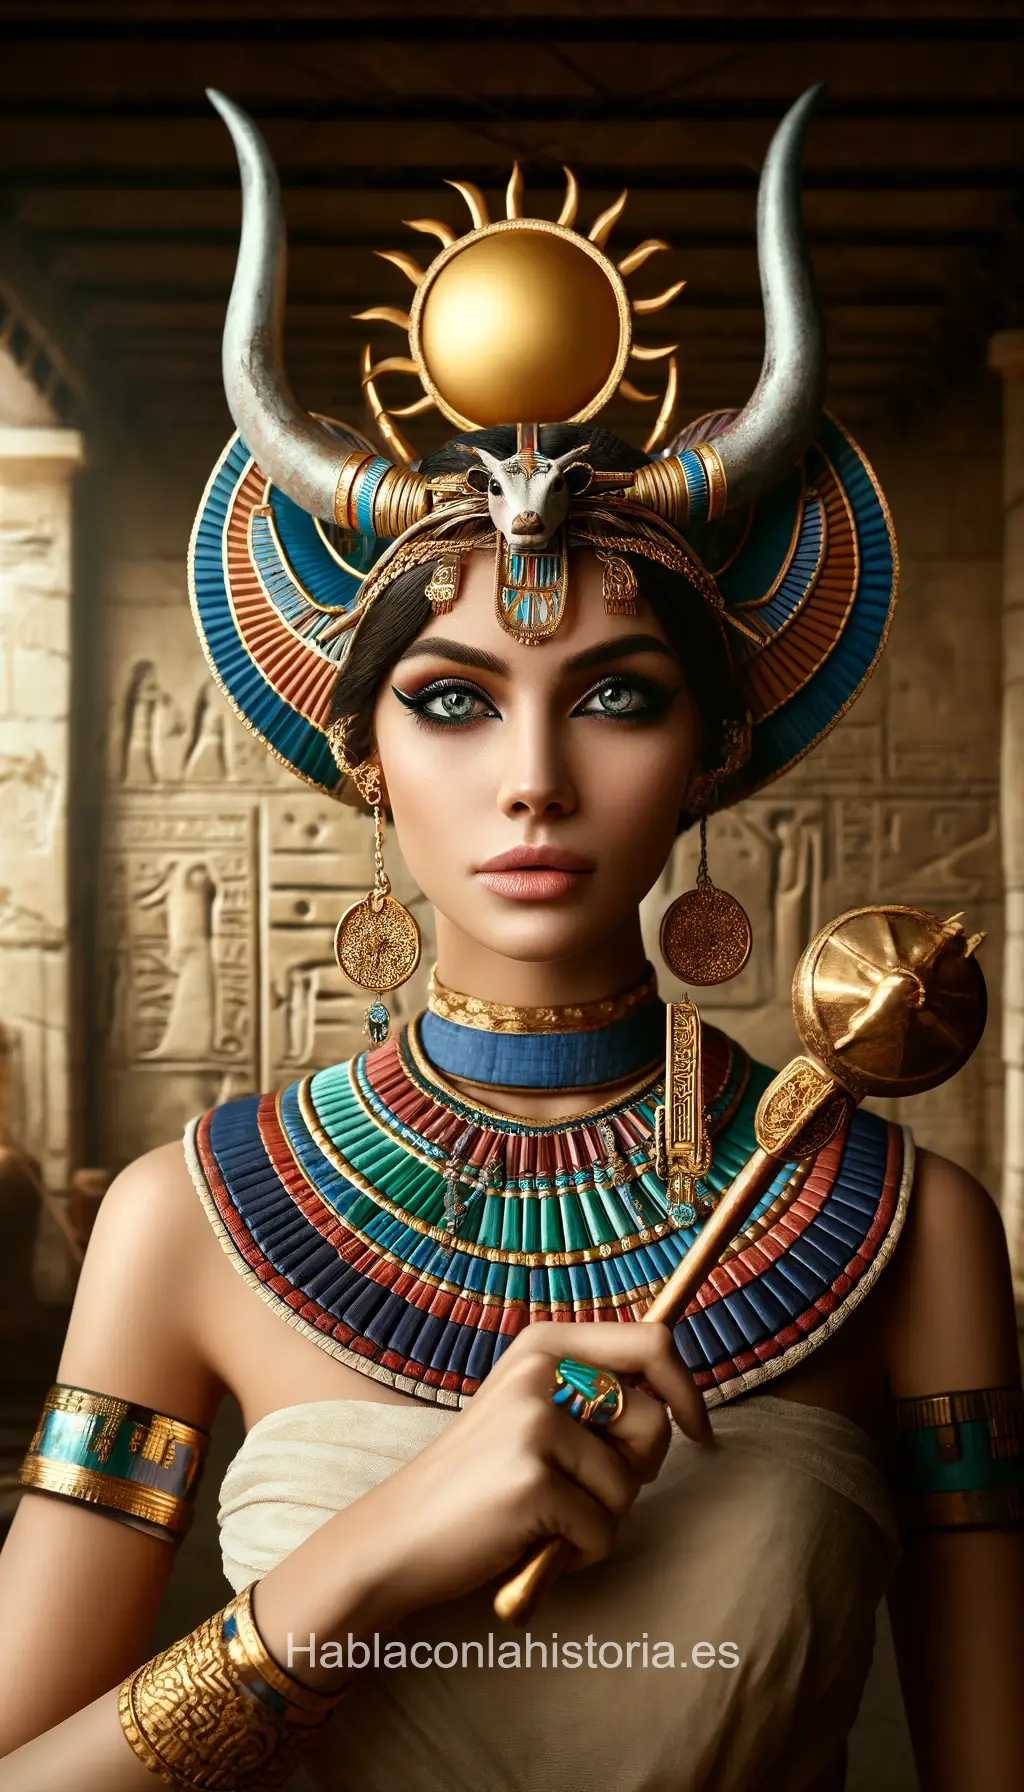 Imagen realista de Hathor, la diosa egipcia del amor y la maternidad, generada por IA. Contiene citas célebres, interacción de chat IA y actividades de aprendizaje histórico.